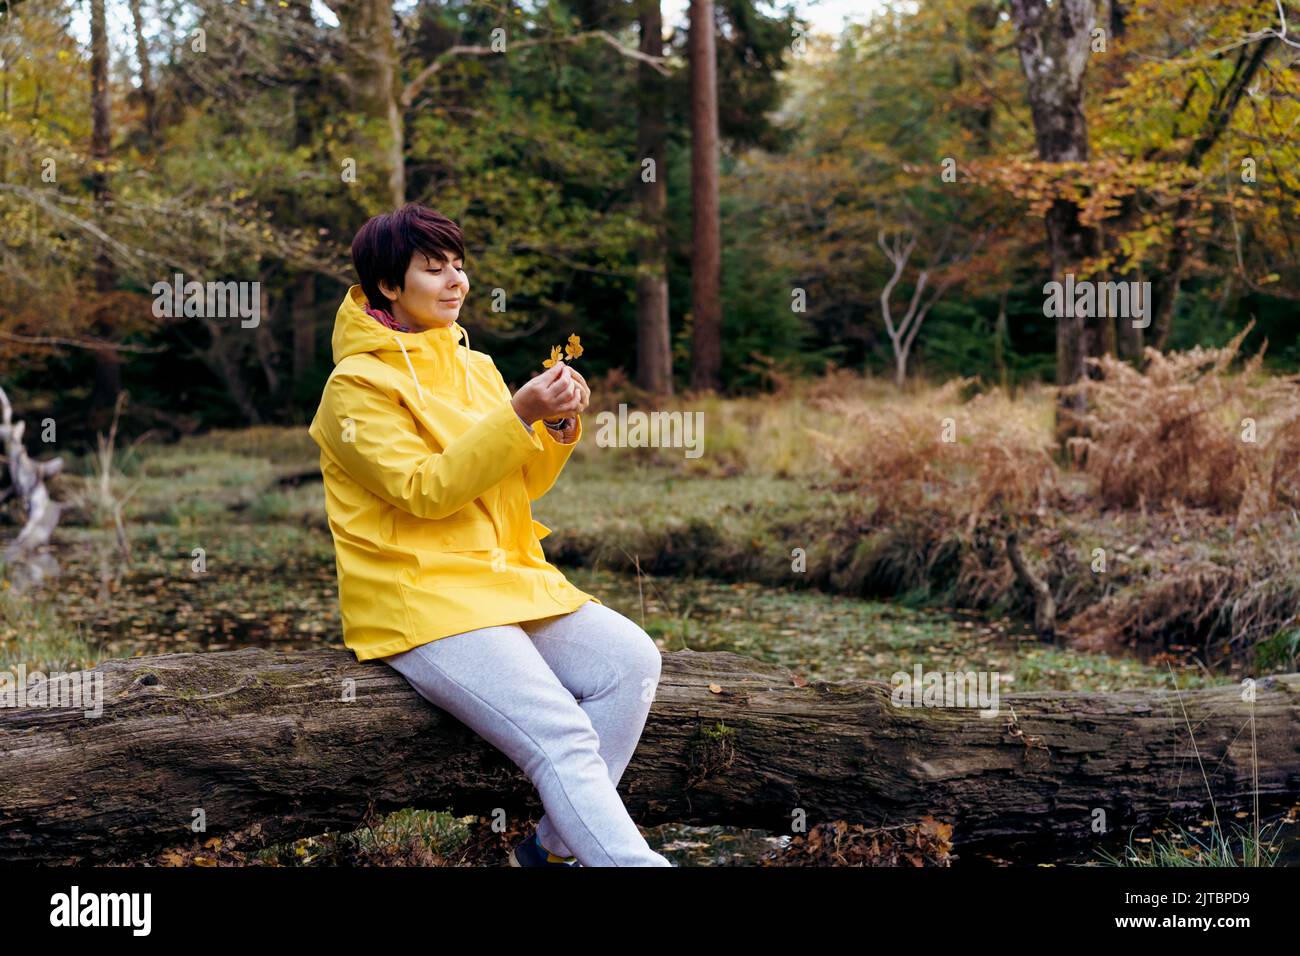 Mujer con chubasquero amarillo brillante sentada en un árbol caído con  hojas caídas y disfrutando del momento en el bosque. Sensación de armonía,  reunión con natur Fotografía de stock - Alamy